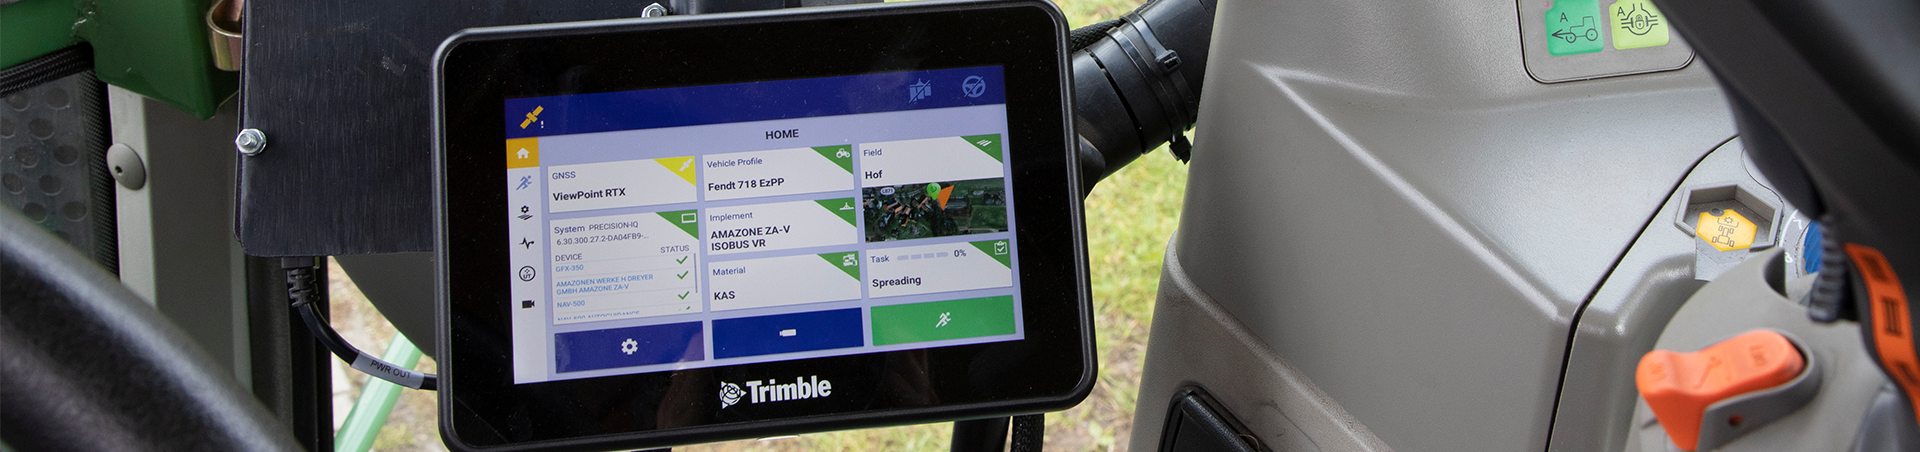 Trimble apresenta novas tecnologias de agricultura de precisão para semeadura e pulverização na Expodireto